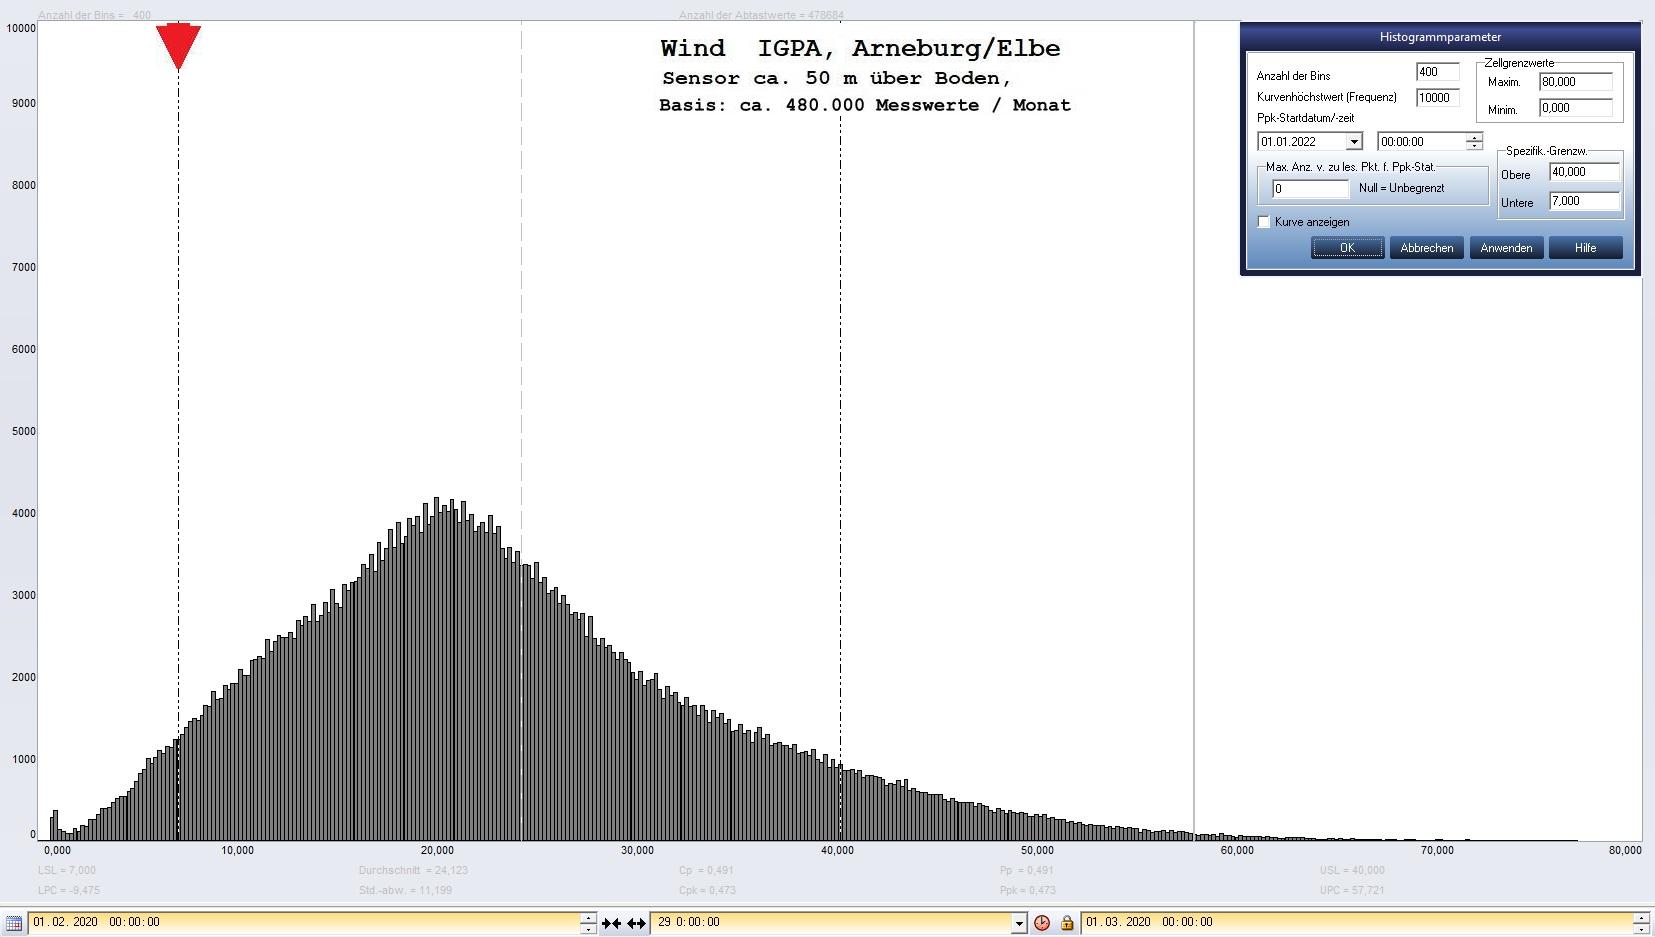 Arneburg Histogramm Winddaten Monat Februar 2020, 
  Sensor auf Gebude, ca. 50 m ber Erdboden, Basis: 5s-Aufzeichnung